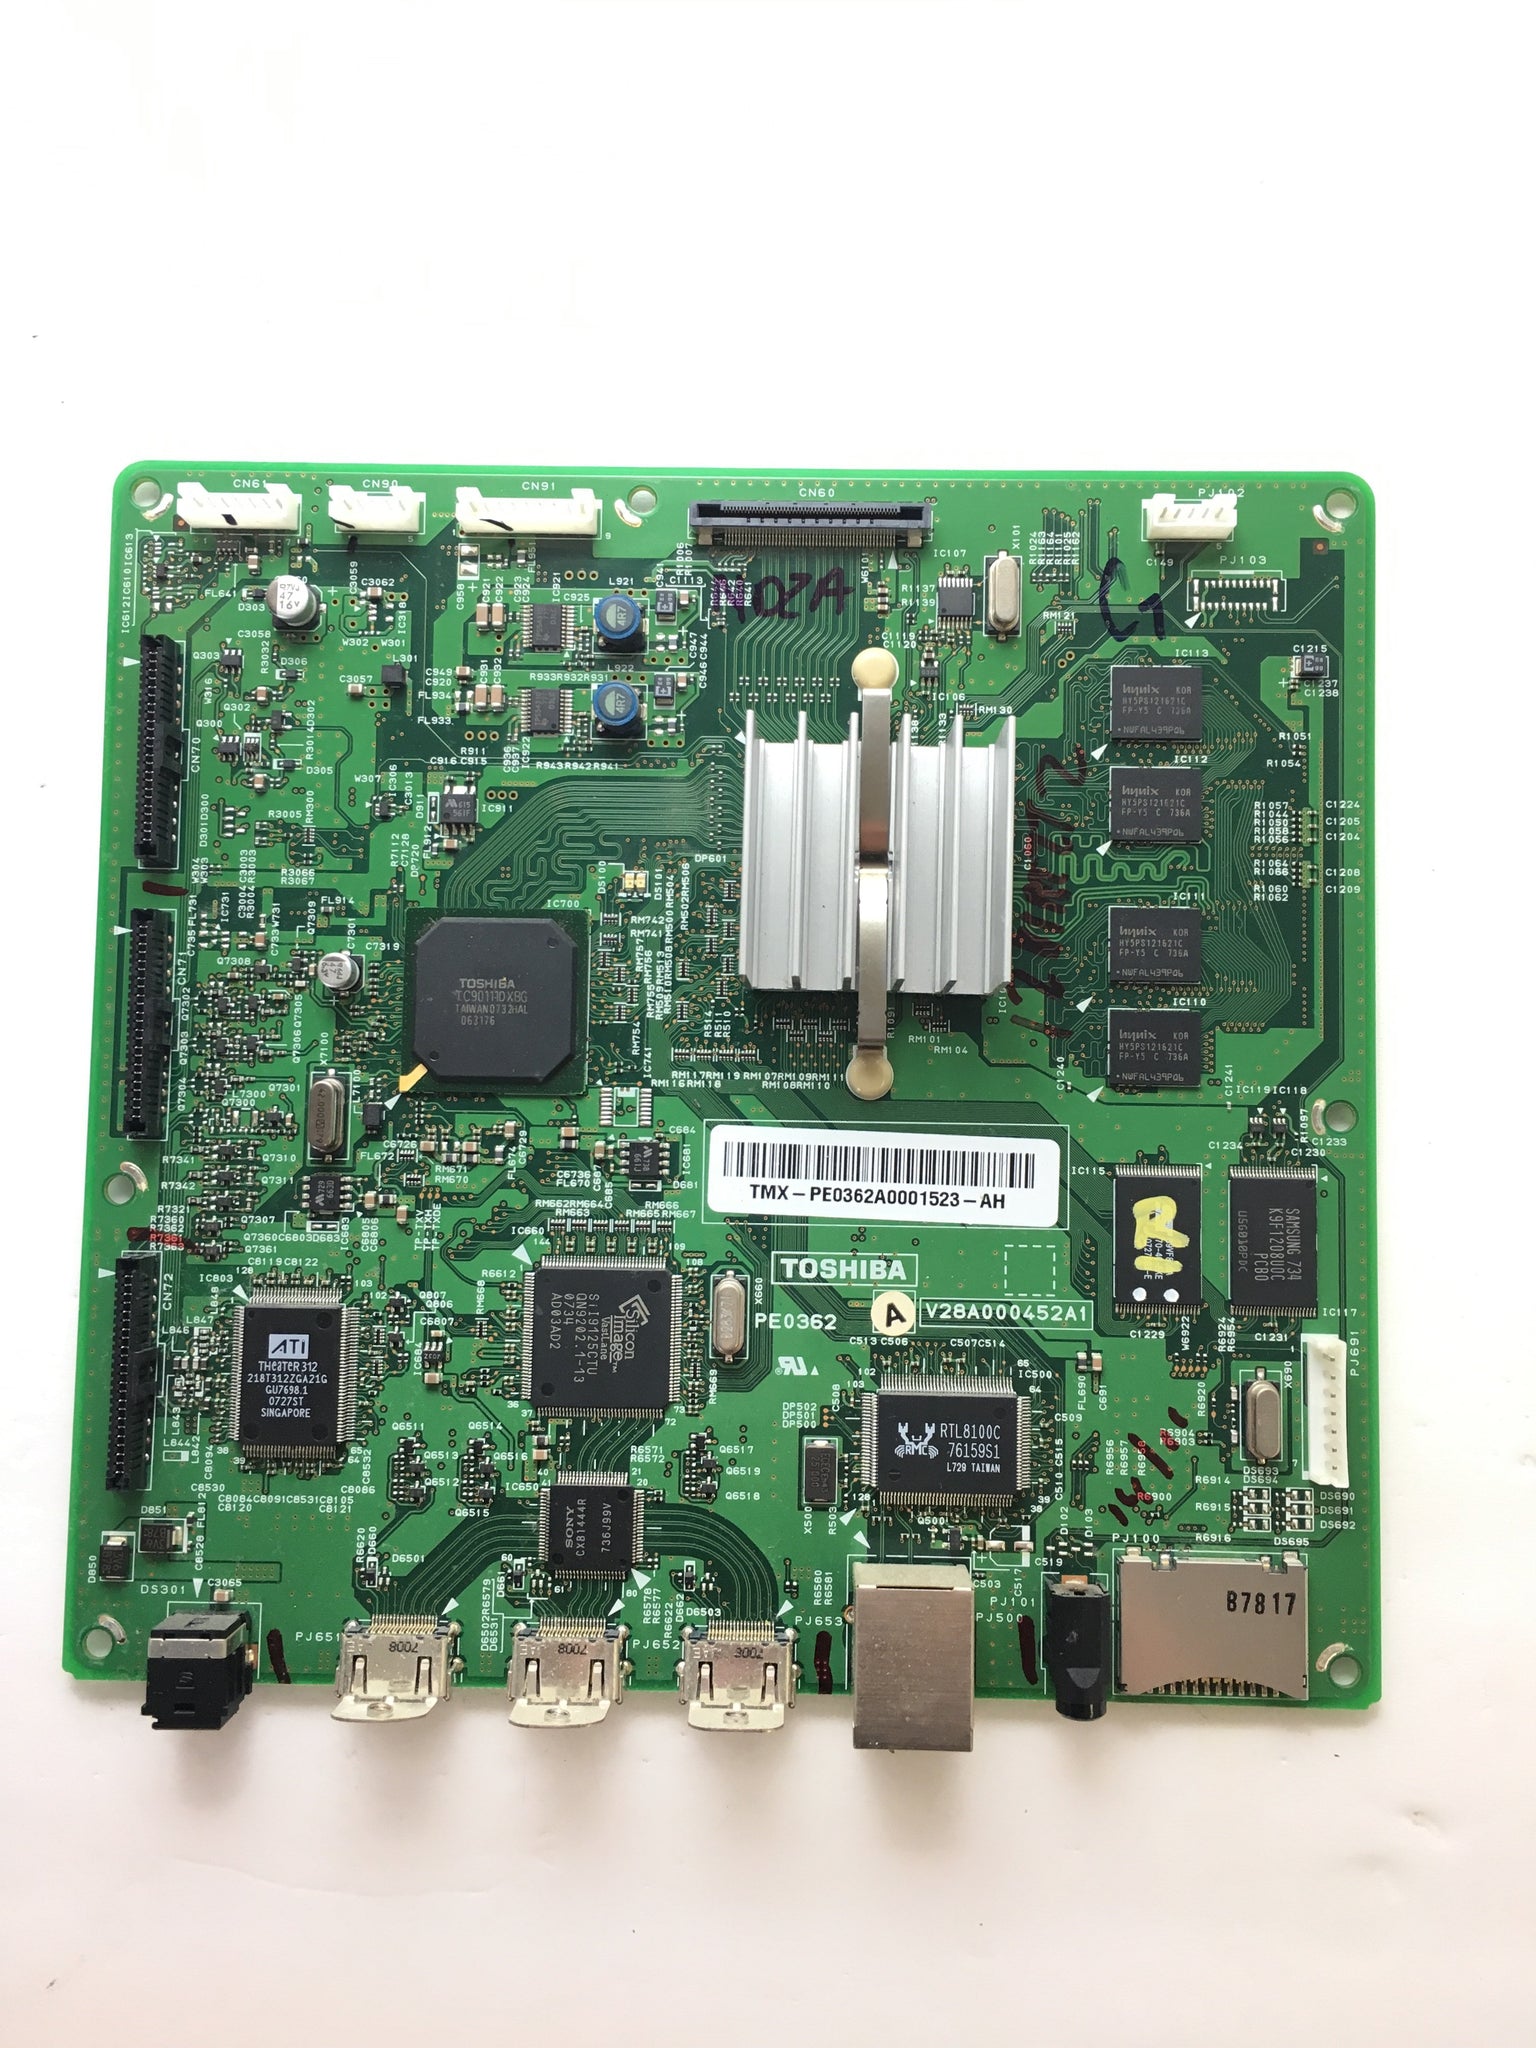 Toshiba 75008043 (V28A000452A1) Seine Board